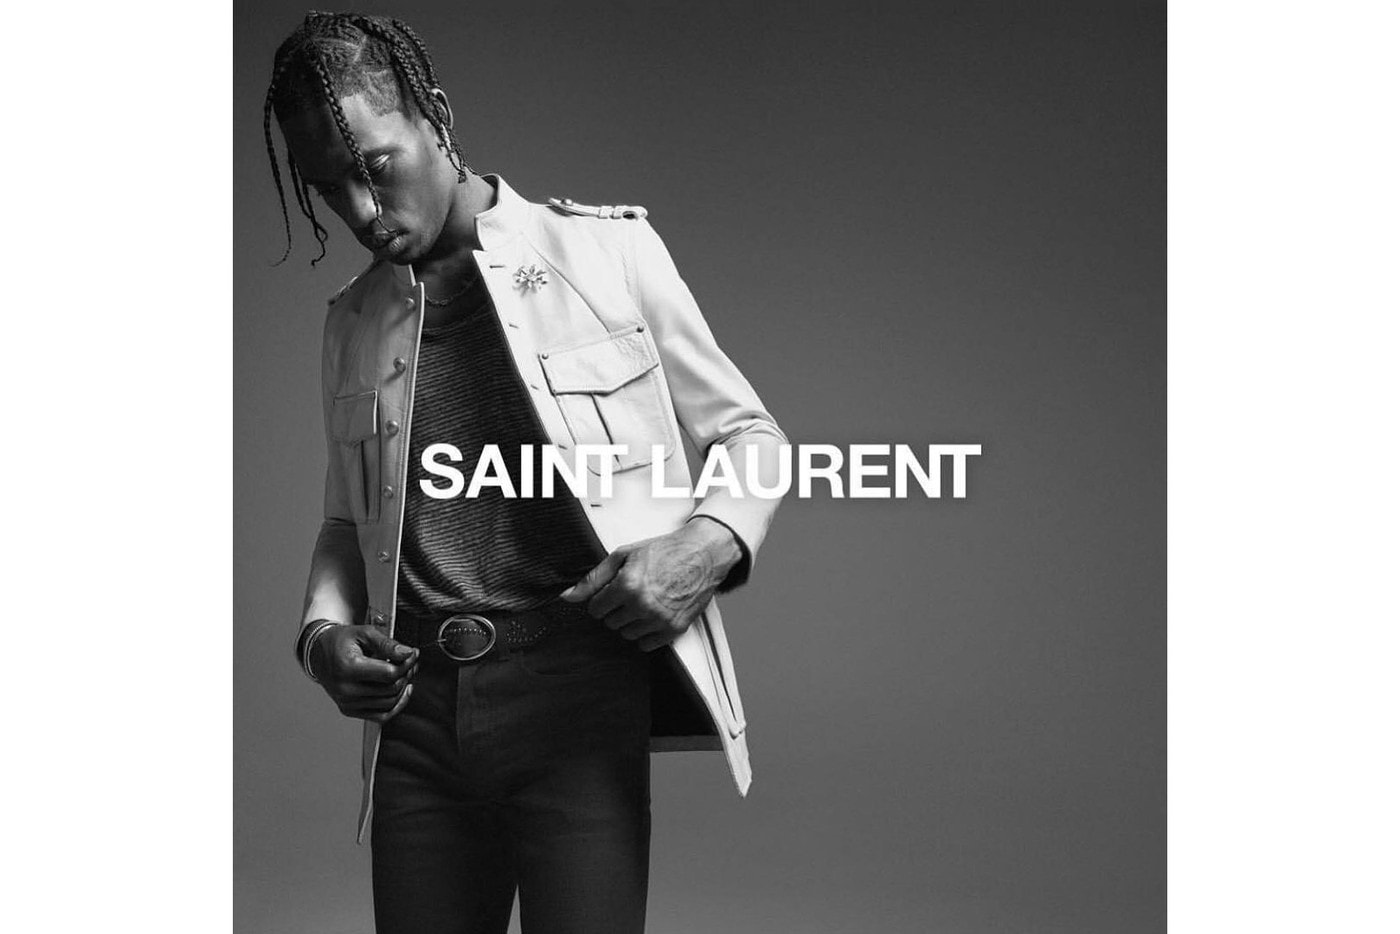 Saint Laurent 聯手 Travis Scott 打造 2019 春夏宣傳片